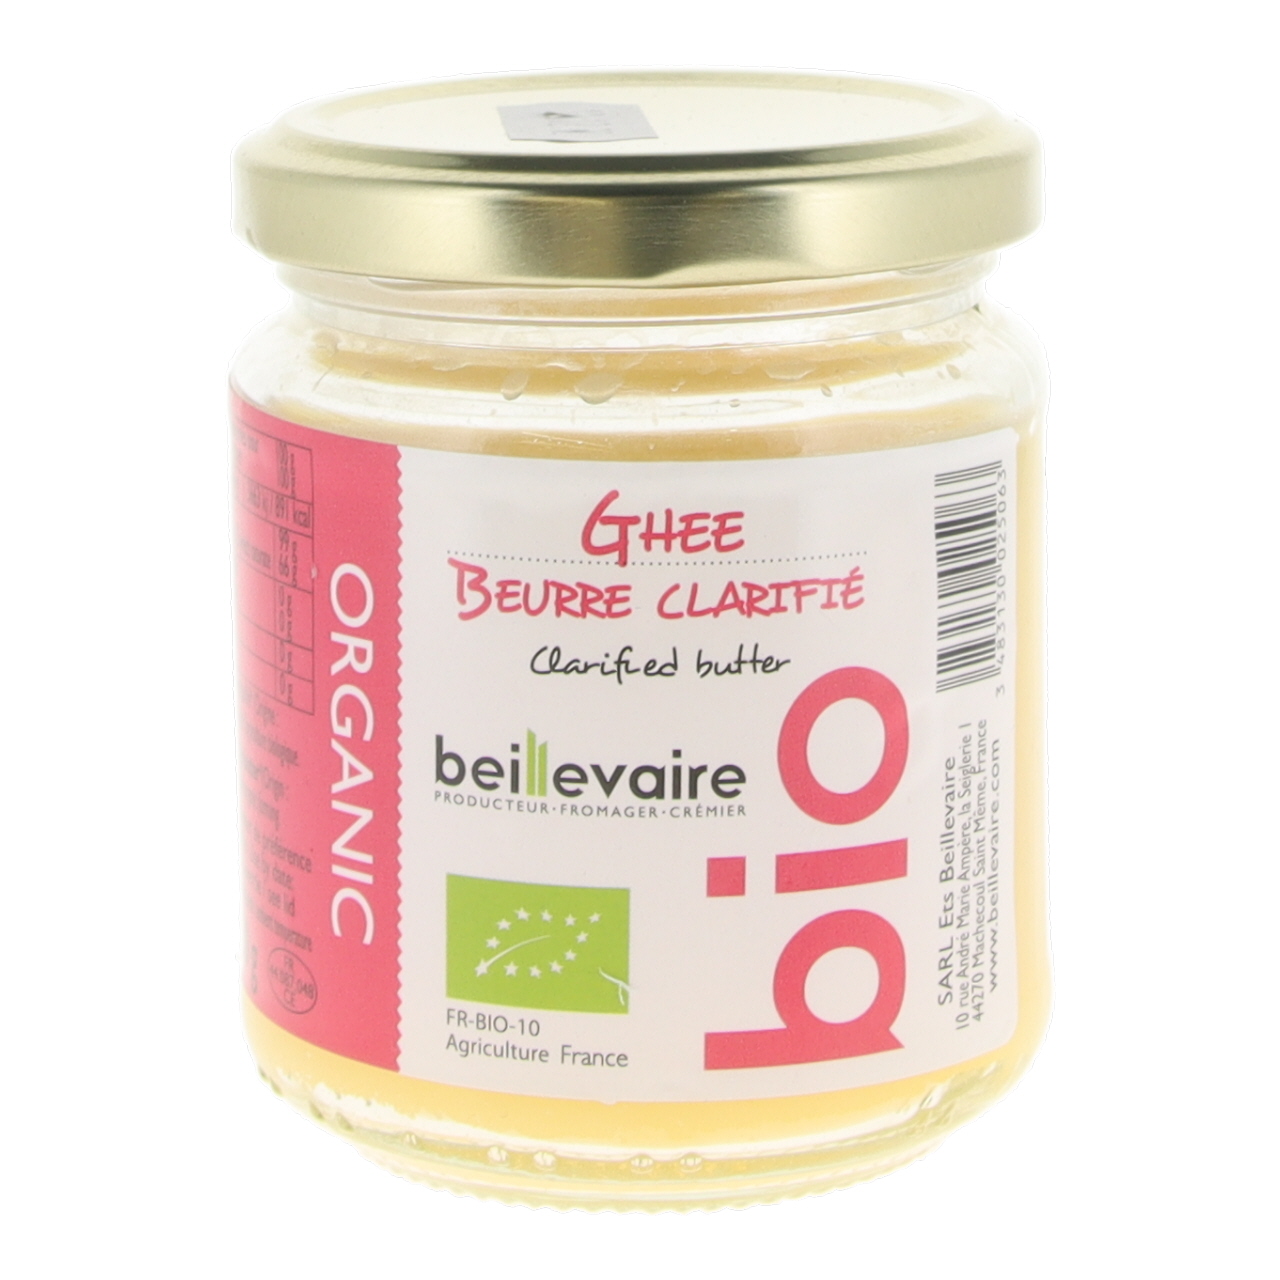 Beurre Clarifié Ghee Biologique - 225 g